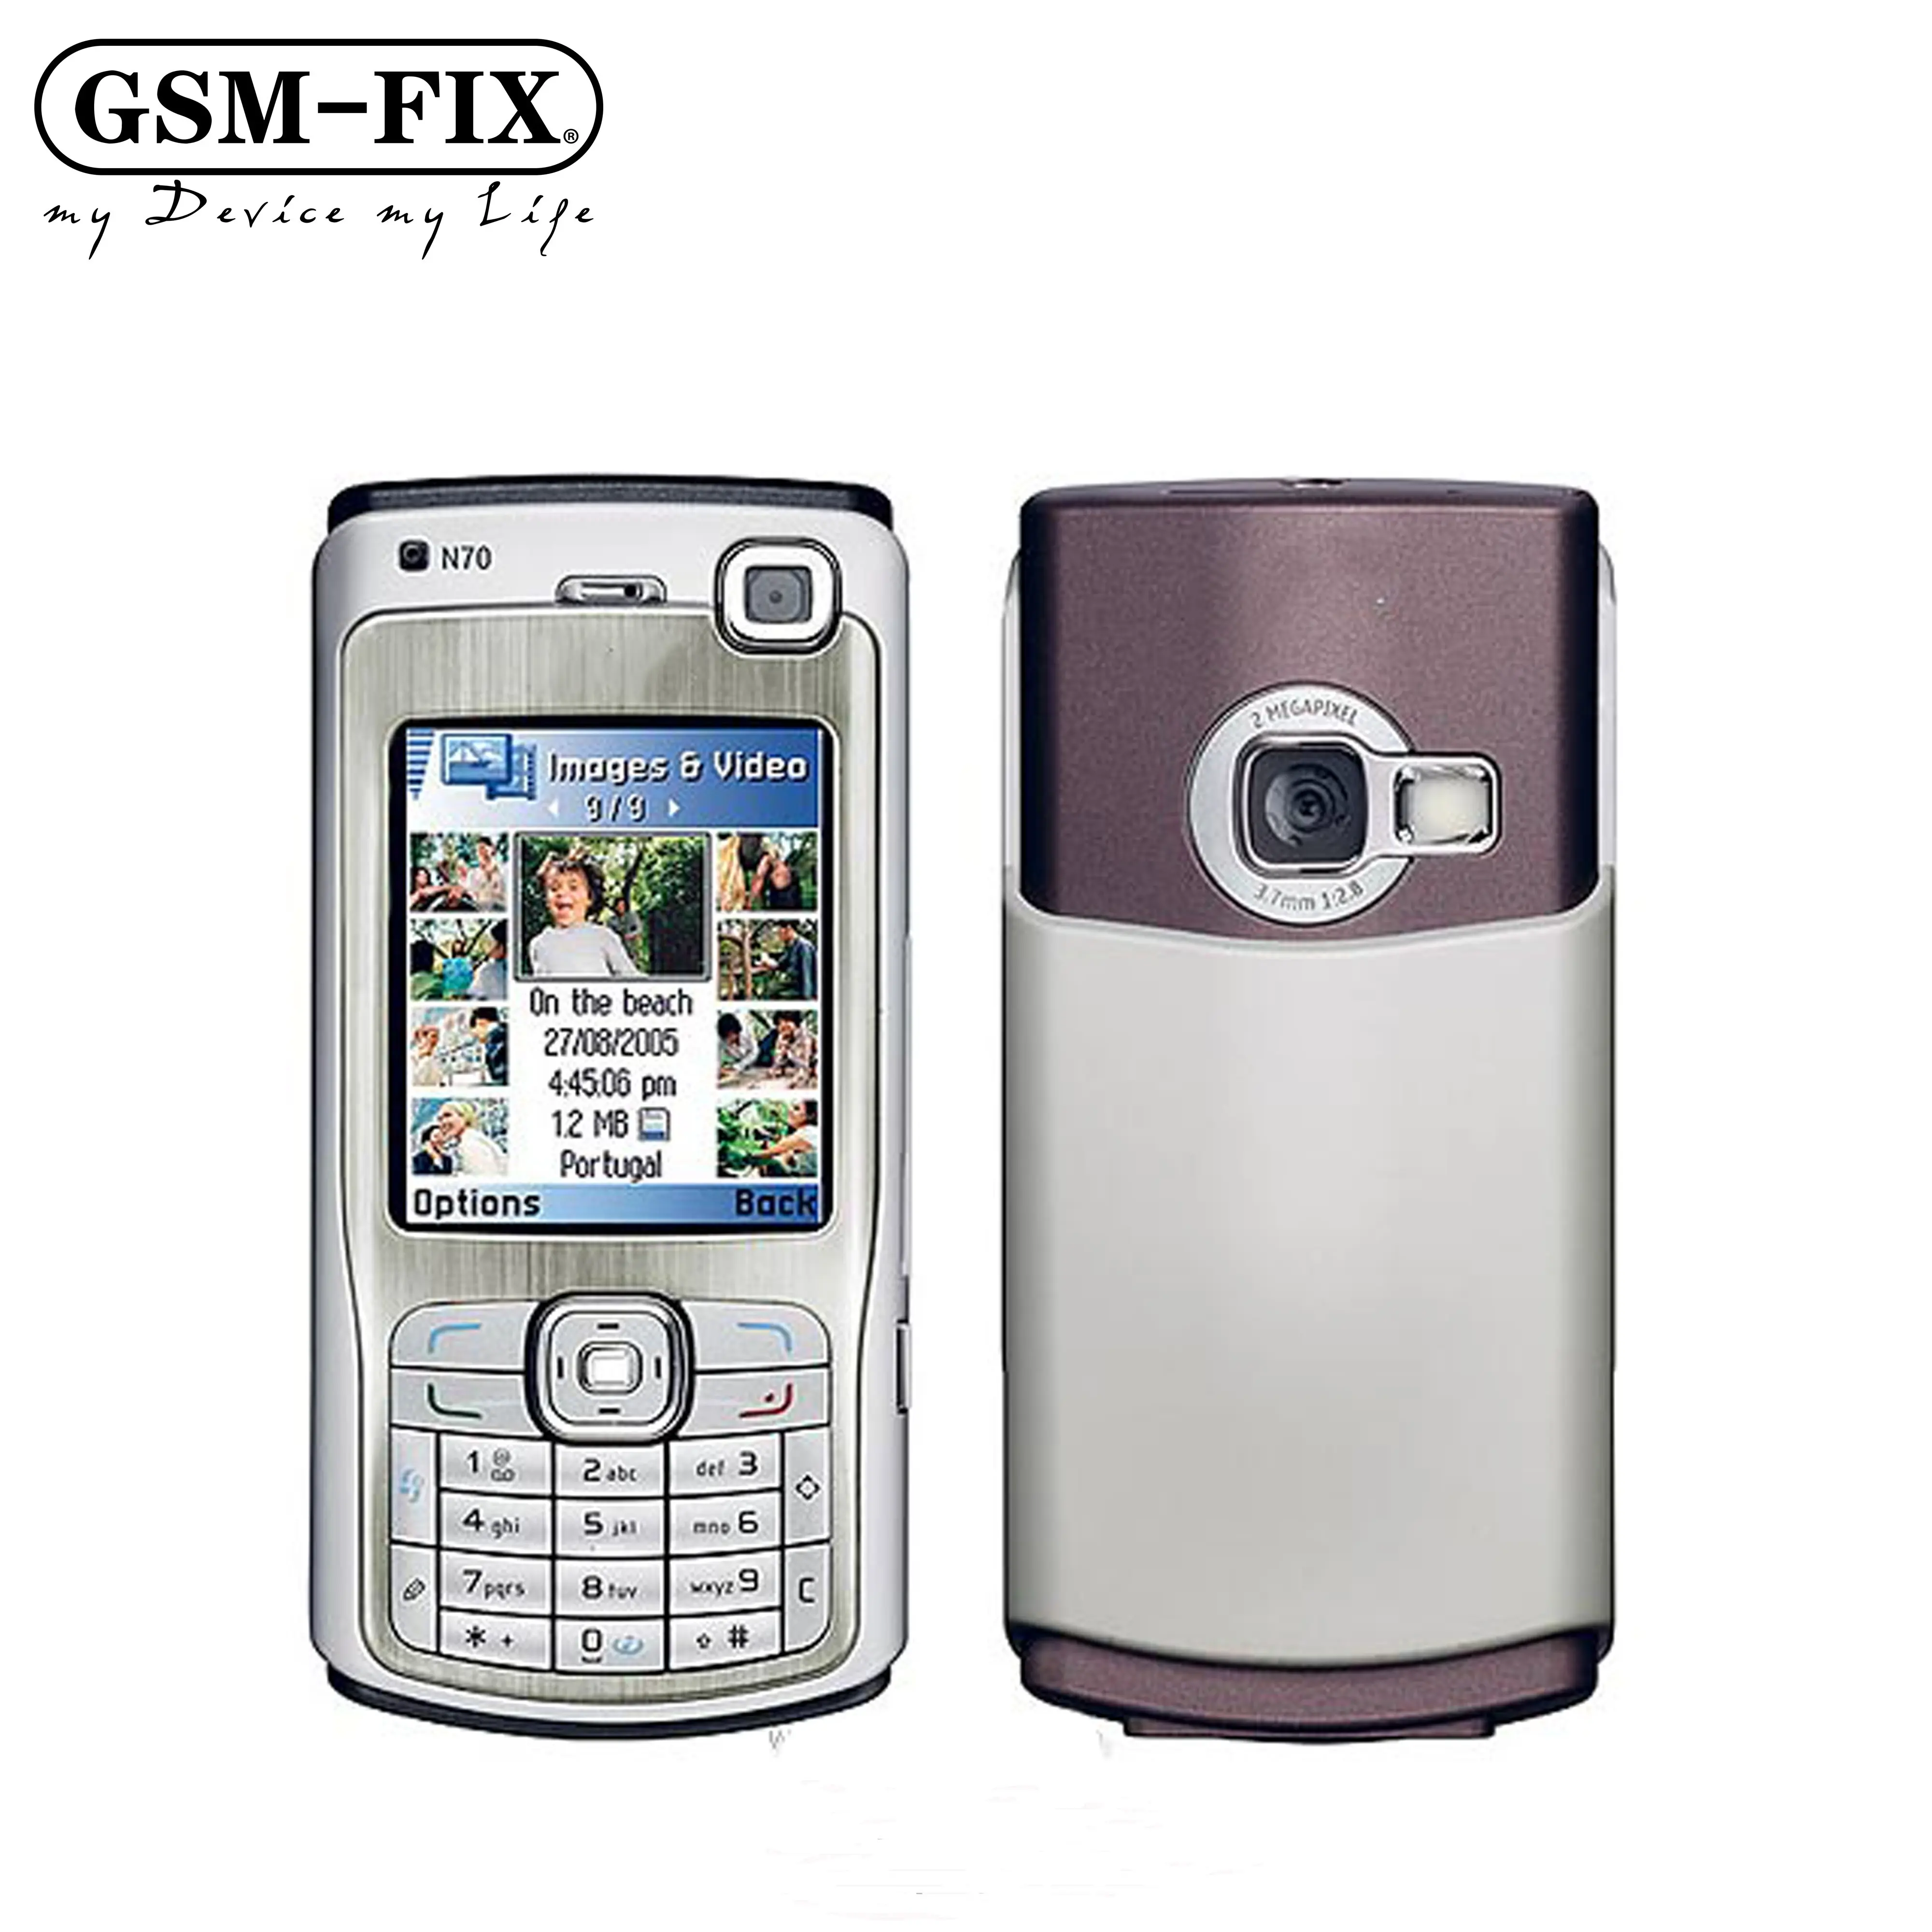 GSM-FIX Schlussverkauf günstig Original einfach klassisch Bar GSM-Handy Handy im Verkauf 2.1 Zoll Display für Nokia N70